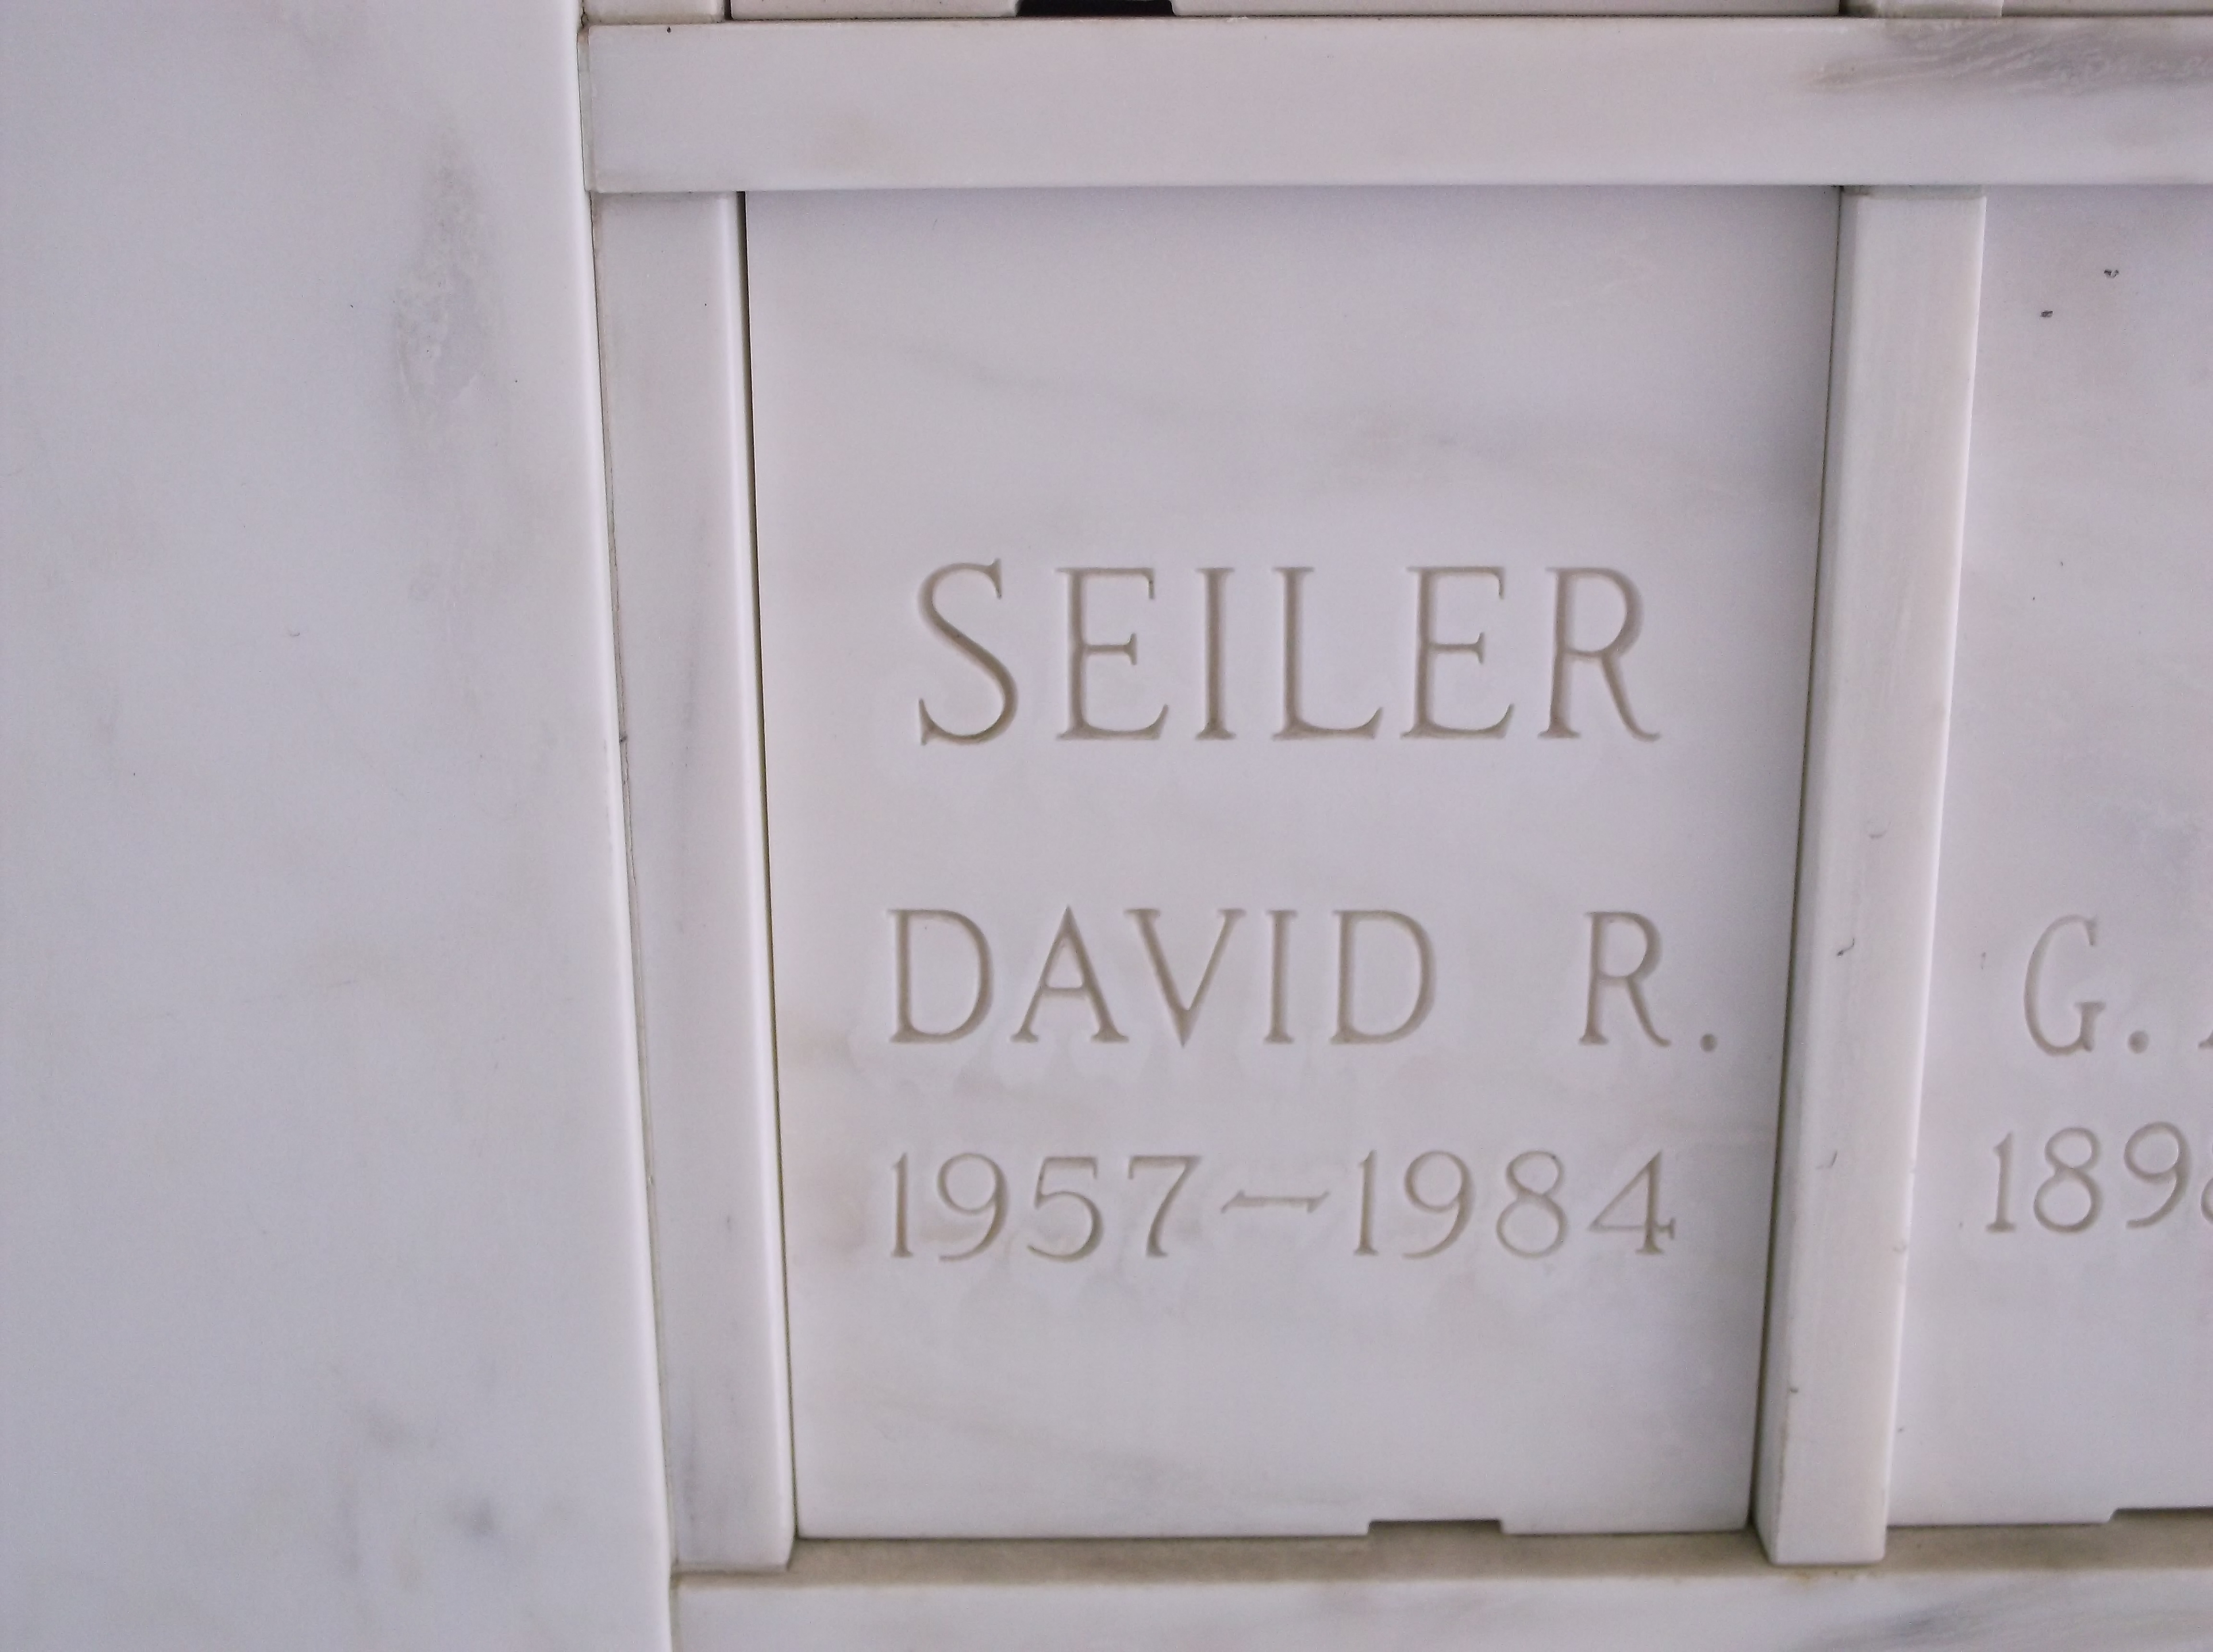 David R Seiler